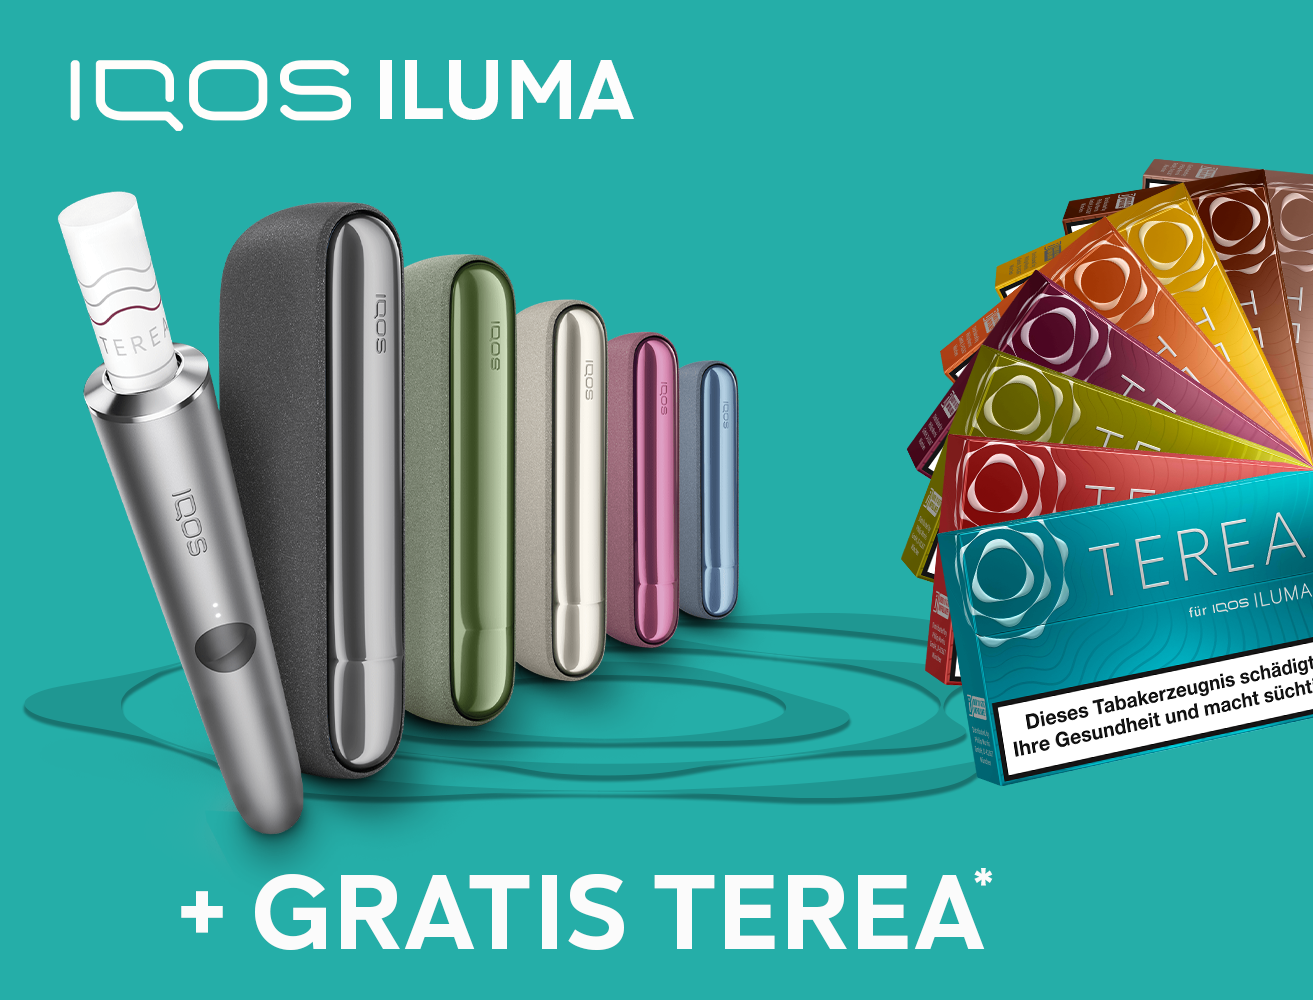 IQOS ab 9 € kaufen + Bis zu 60 TEREA Sticks gratis